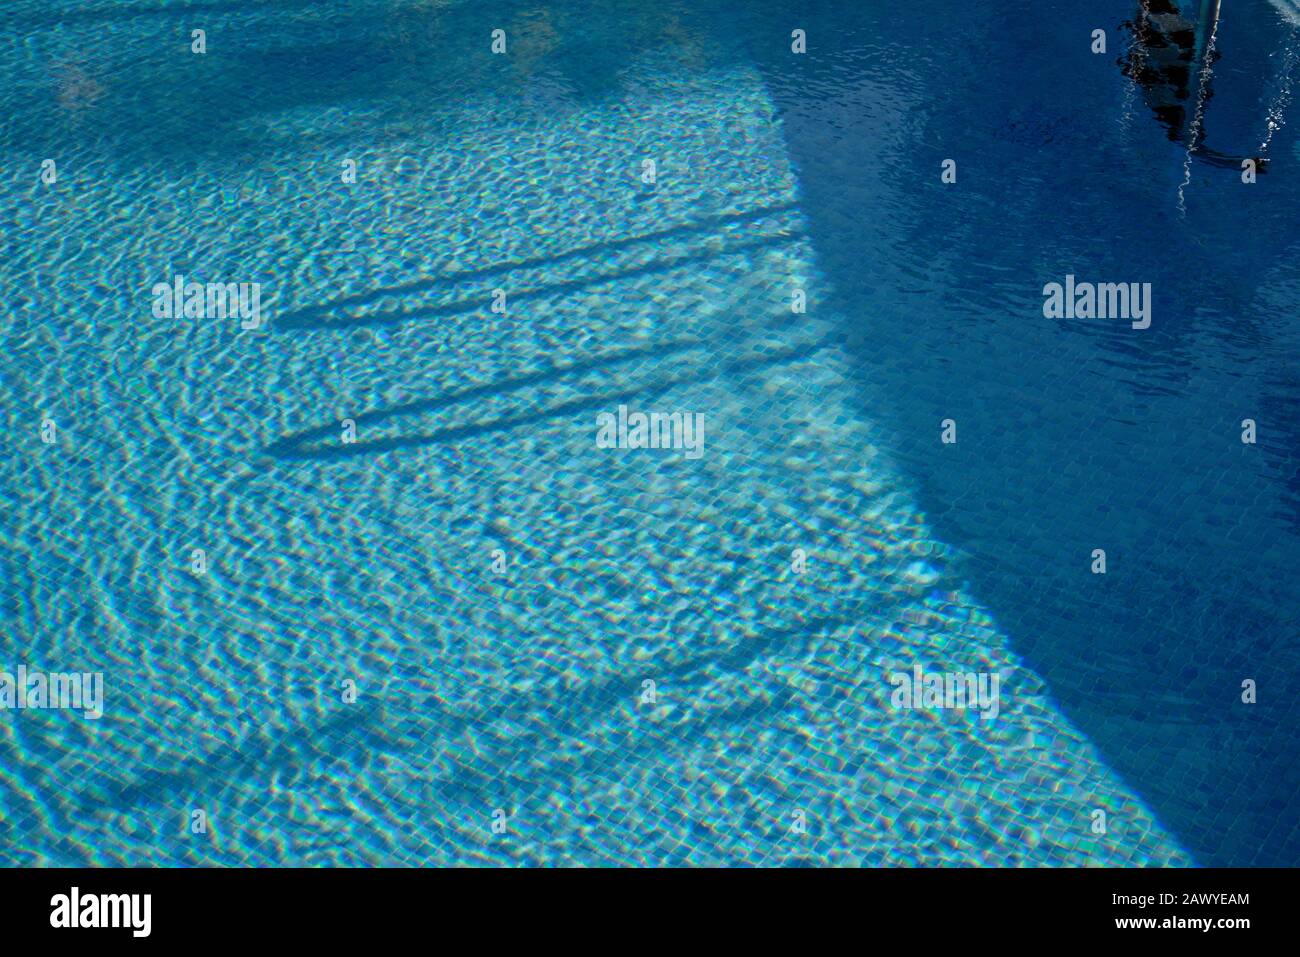 Reflexionen in blauen Schwimmbädern mit tropischen Palmen. Pool mit blauen Mosaikfliesen. Stockfoto